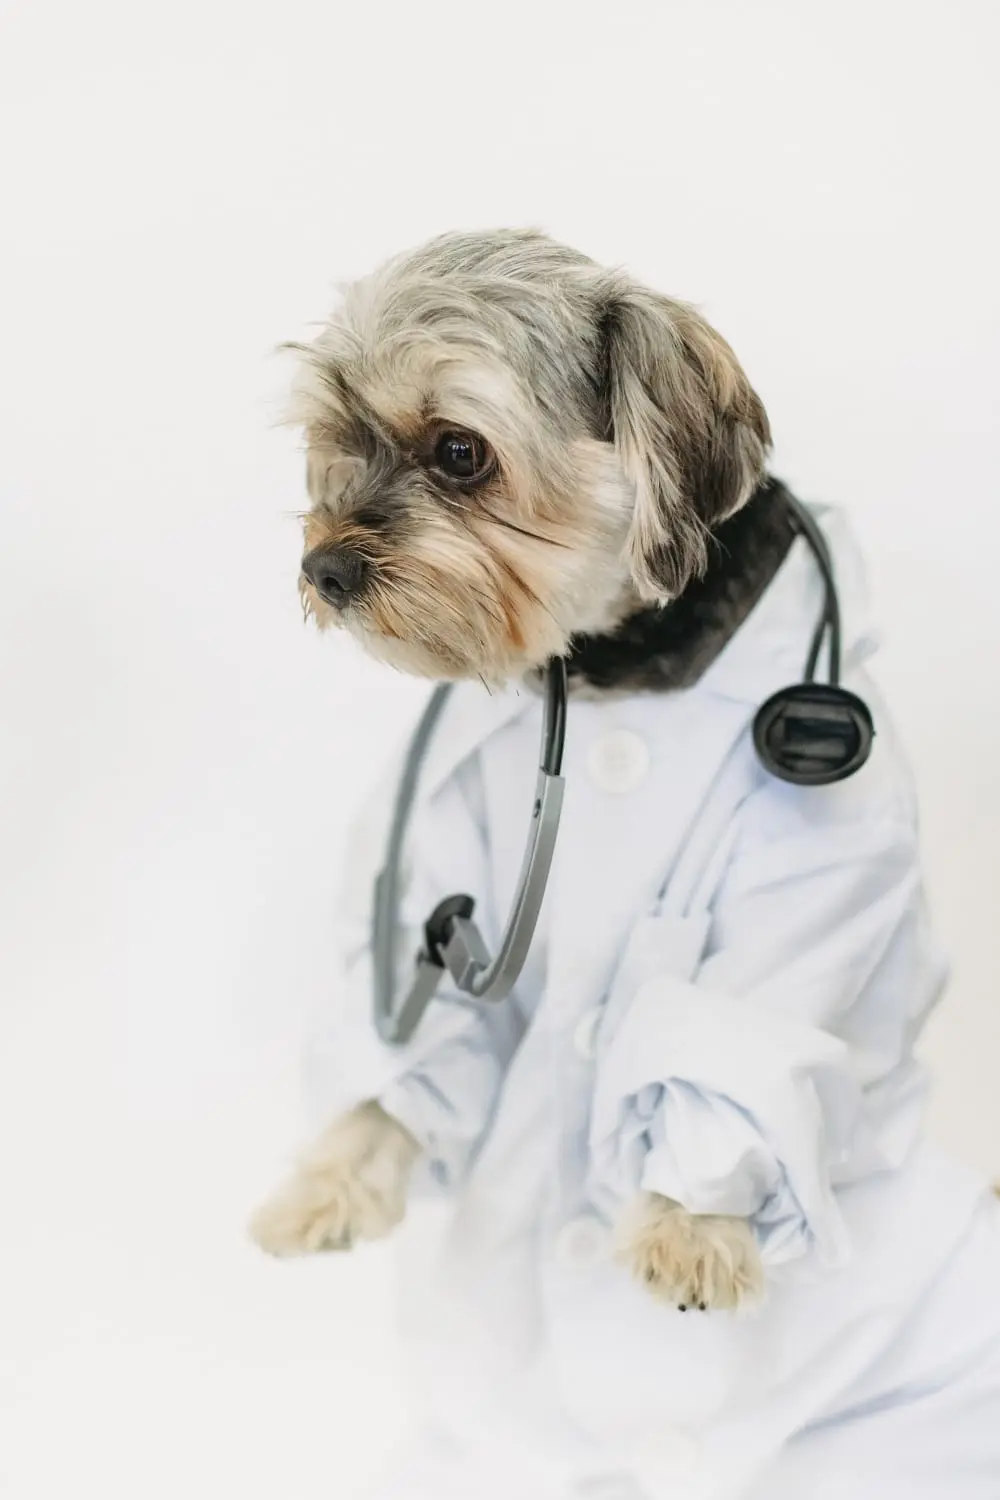 Ein Hund in Arztuniform